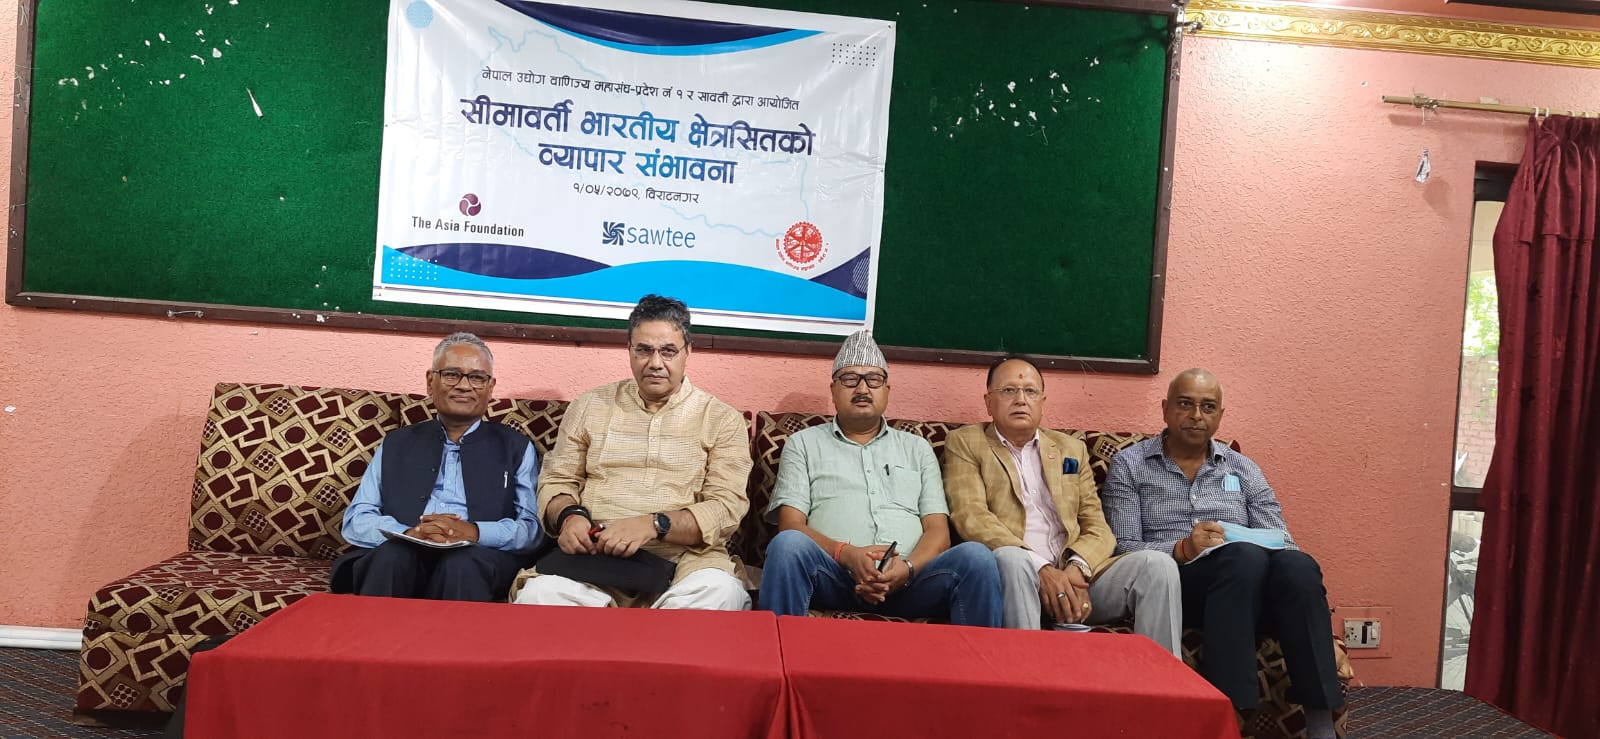 नेपाली ढुवानीका साधन भारतमा पुग्न पाउने गरि व्यापार सम्झौता संशोधन गरिनुपर्ने सुझाव